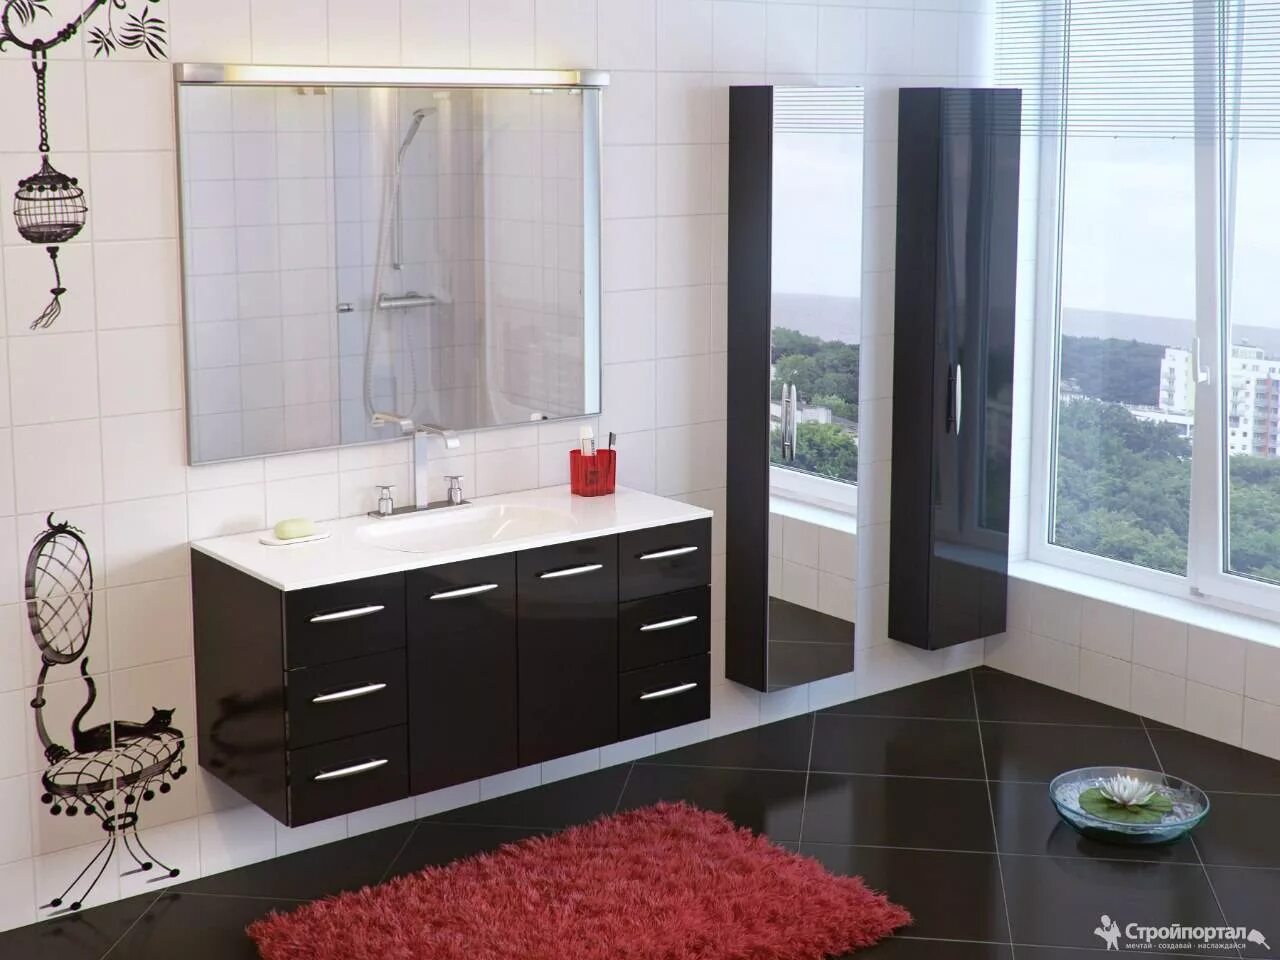 Мебель для ванной комнаты. Красивая мебель для ванной комнаты. Комплект мебели в ванную комнату. Стильная ванная мебель. Мебель для ванны казань